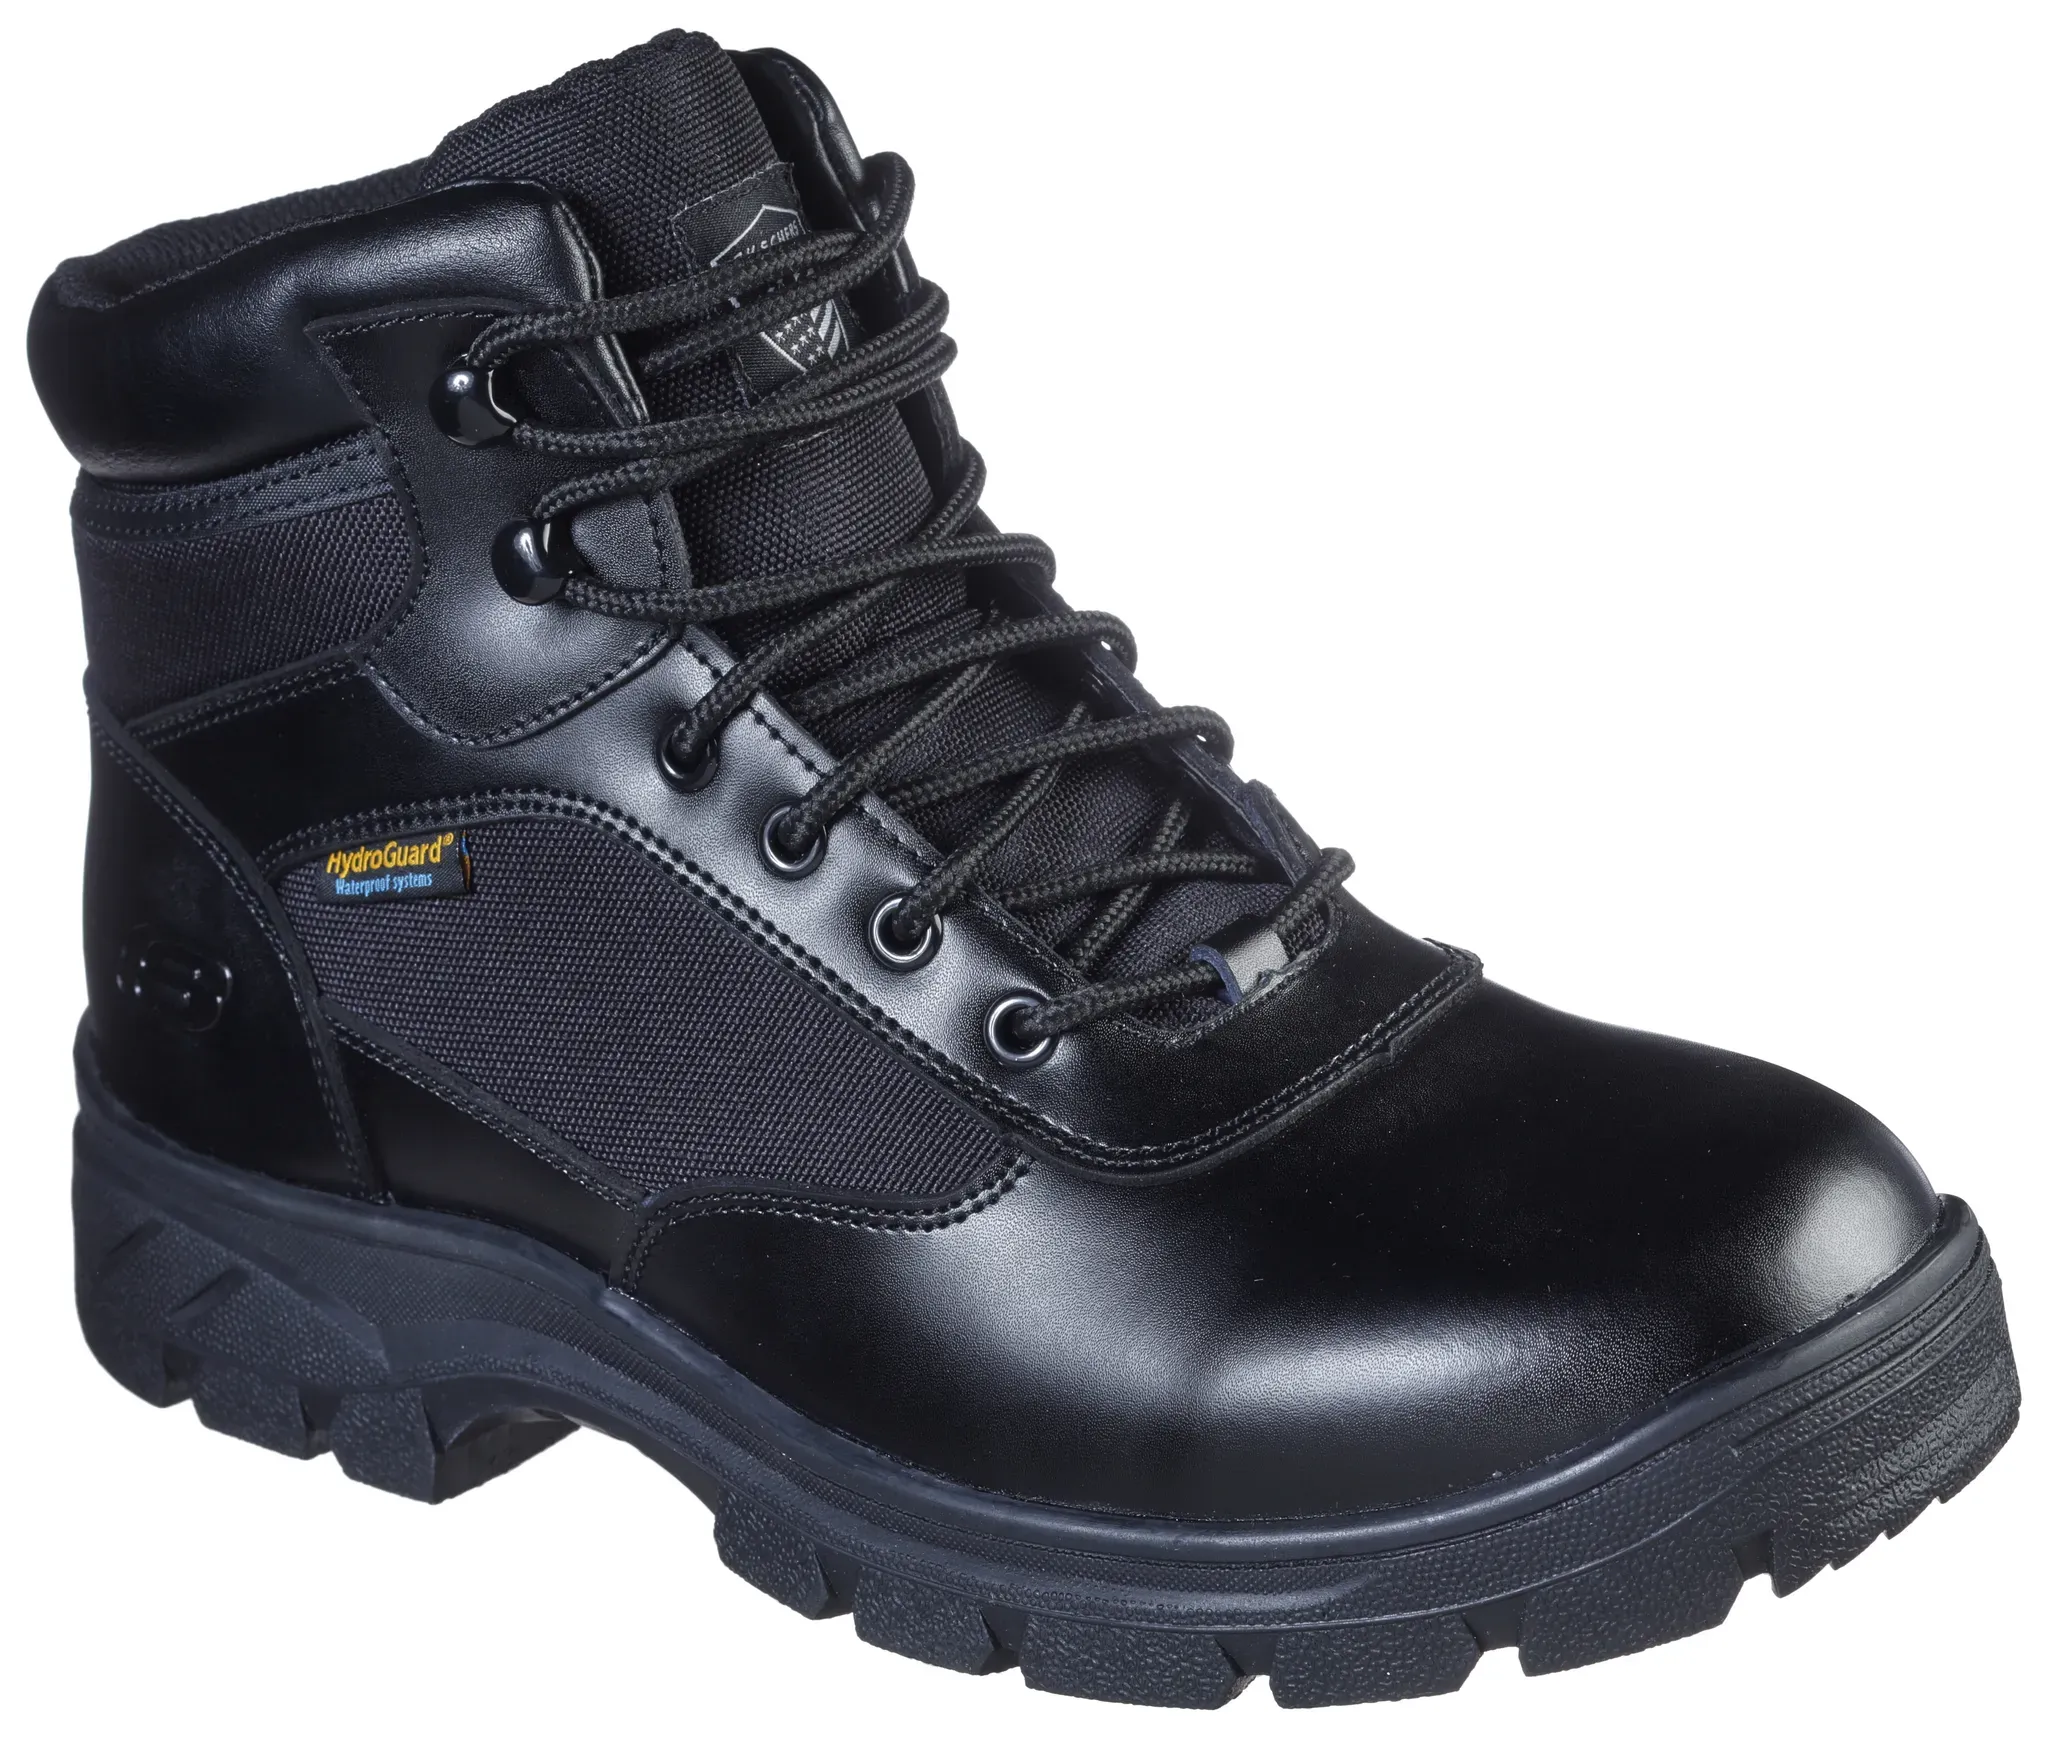 SKECHERS Berufsschuh "WASCANA - BENEN" Schuhe mit Profillaufsohle Gr. 43, schwarz Gartenschuhe